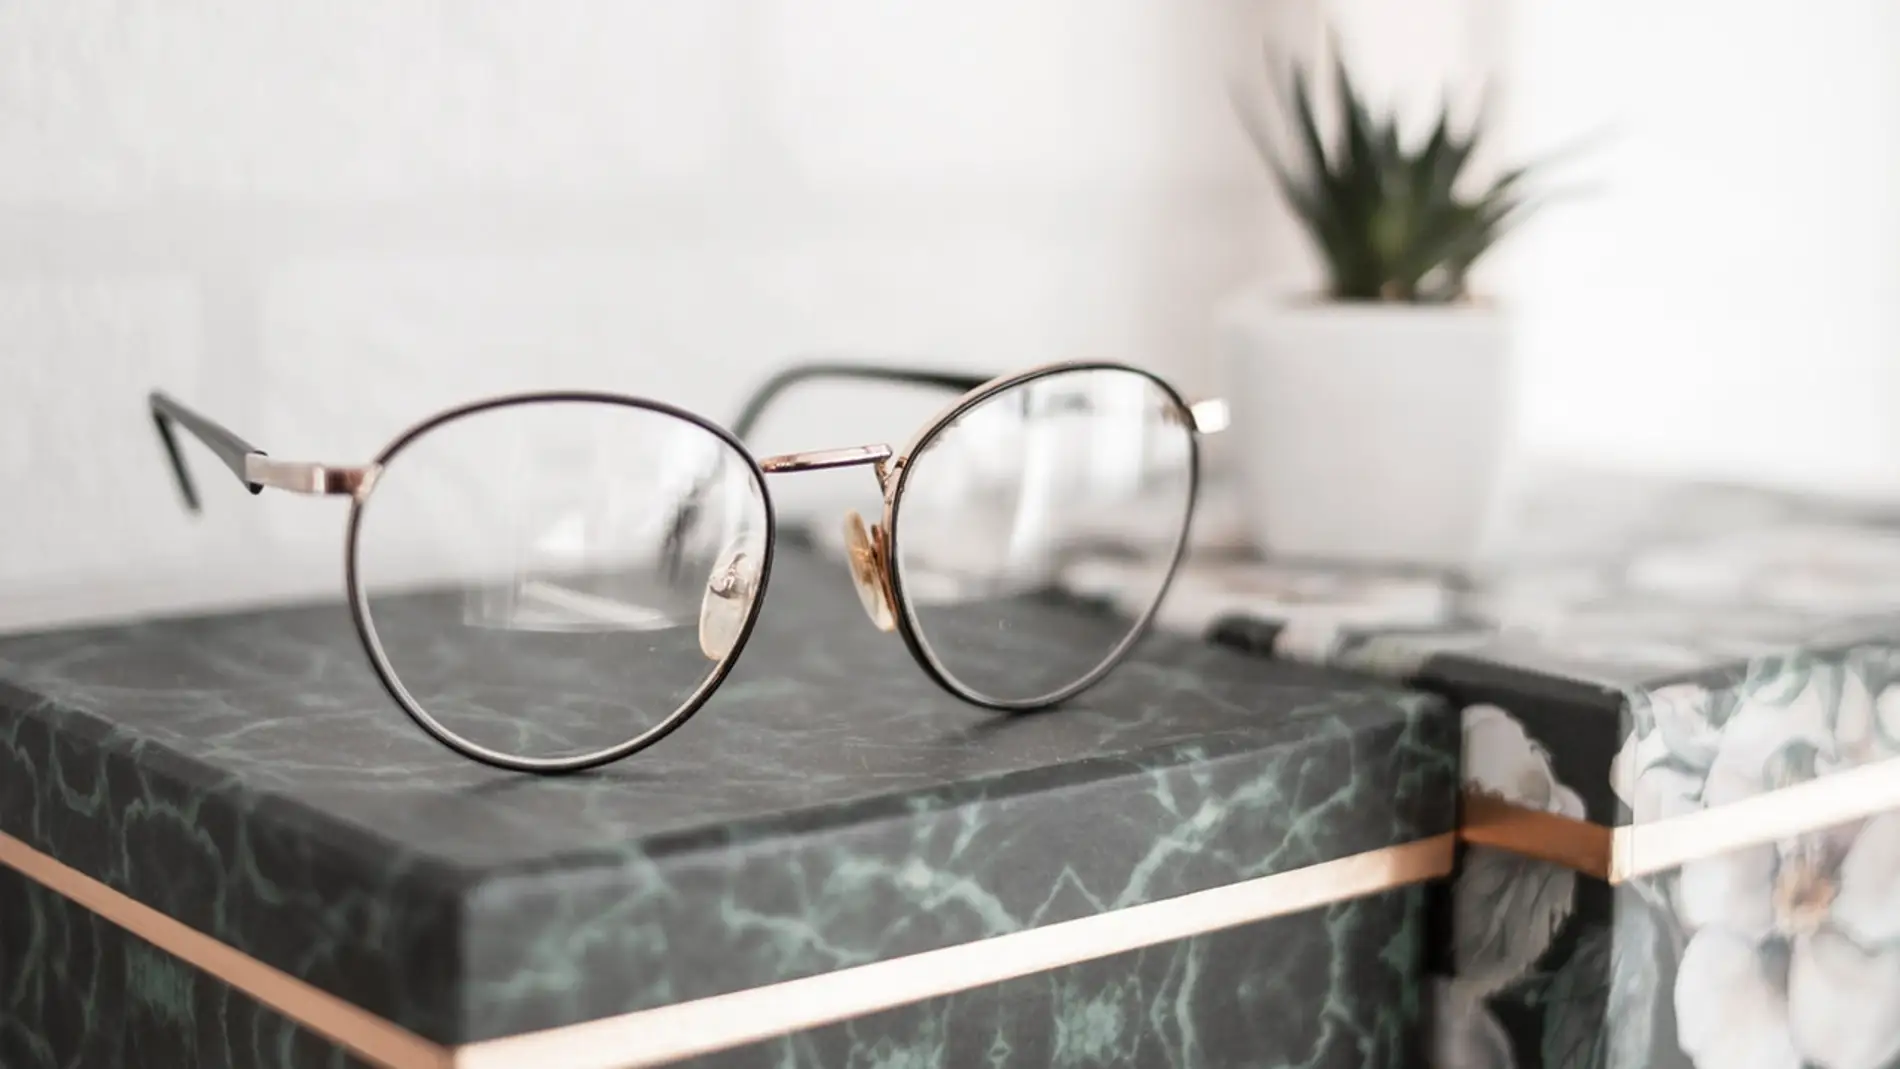 Así es cómo deberías limpiar tus gafas para que duren limpias mucho más tiempo